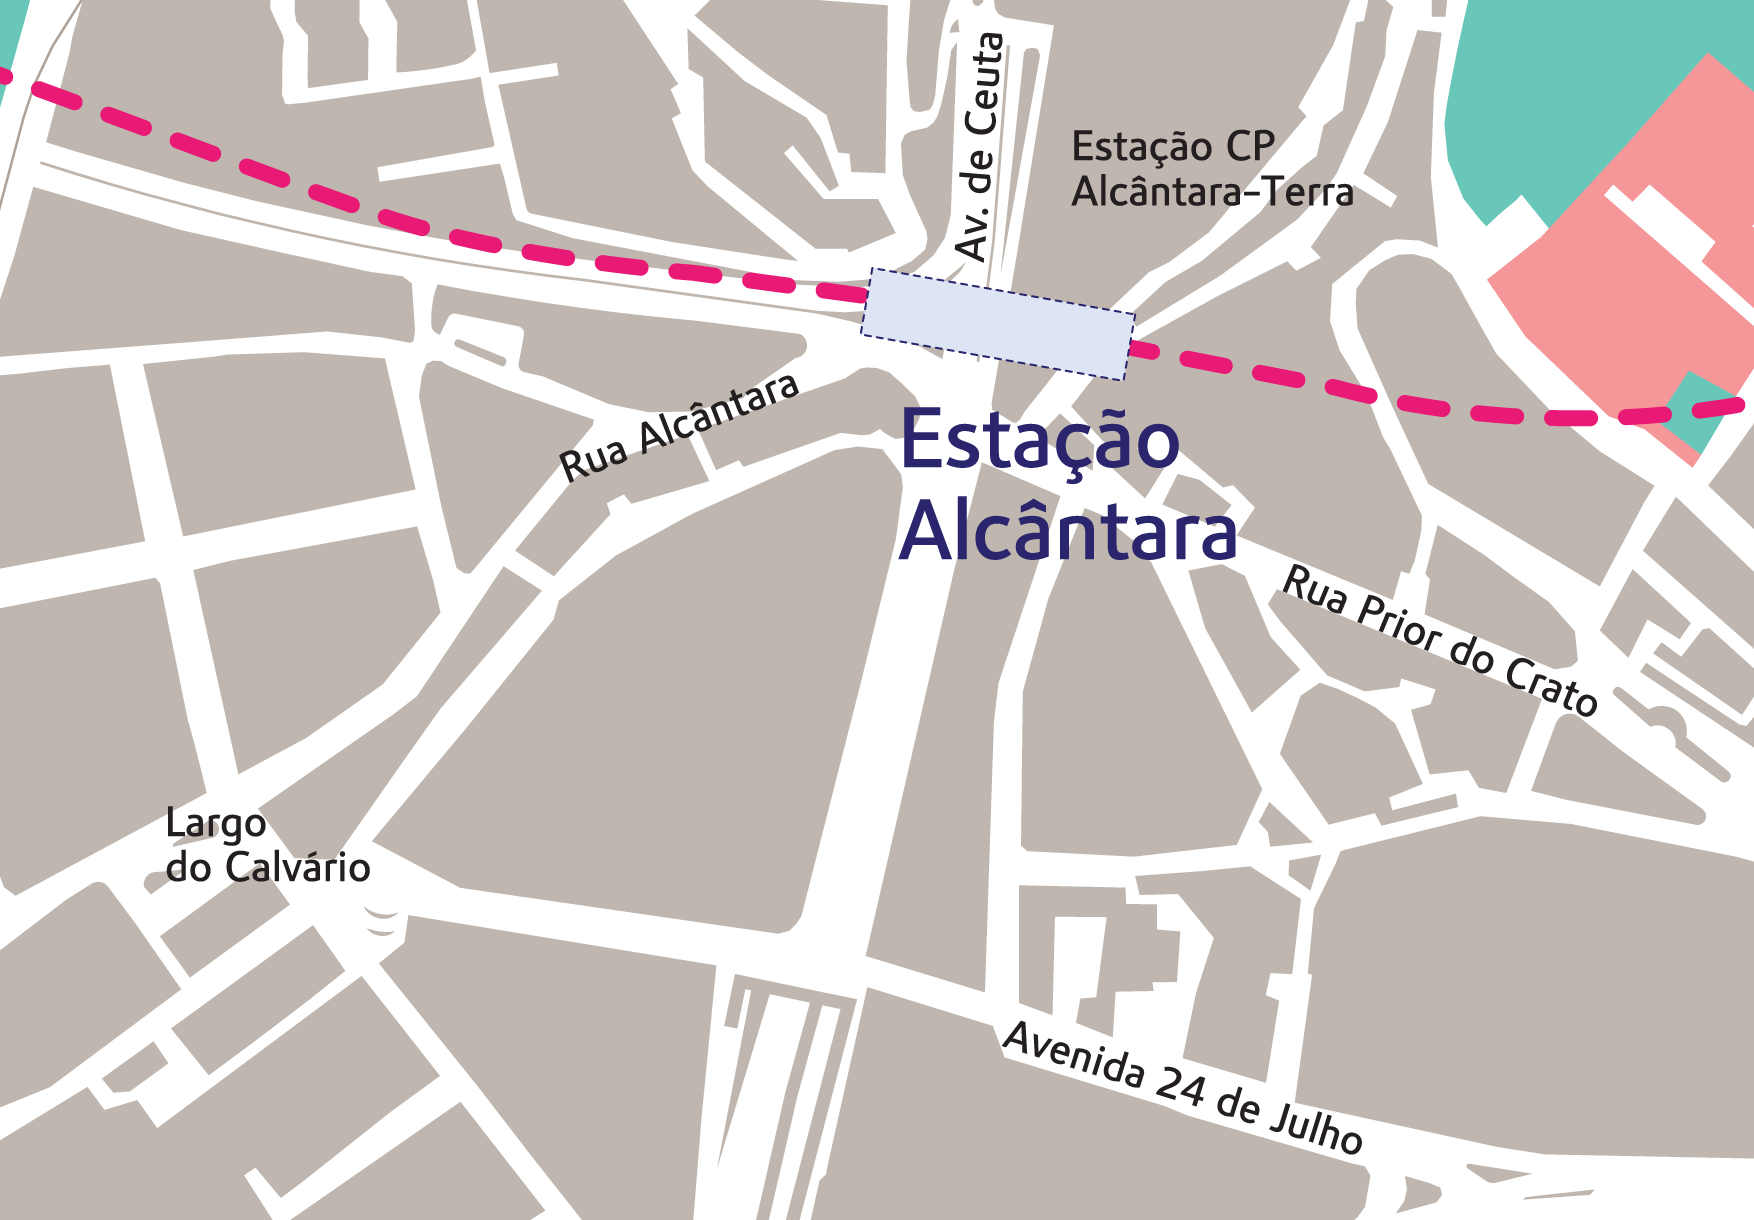 Zona de influência da estação Alcântara